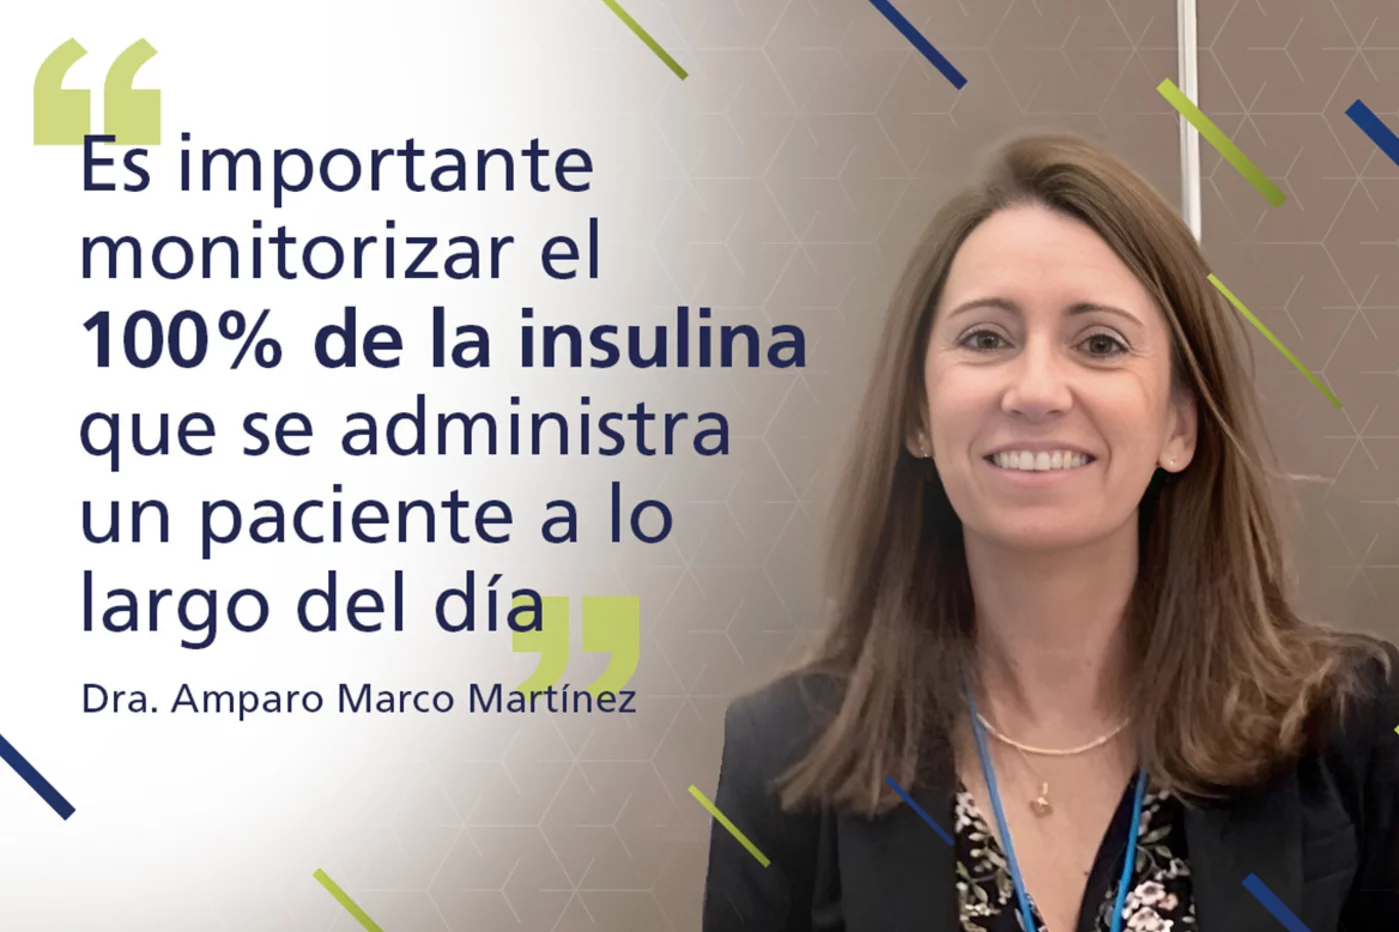 Dra. Amparo Marco Martínez, médico especialista en Endocrinología y Nutrición en el Complejo Hospitalario Universitario de Toledo y profesora asociada de la Universidad Europea de Madrid.